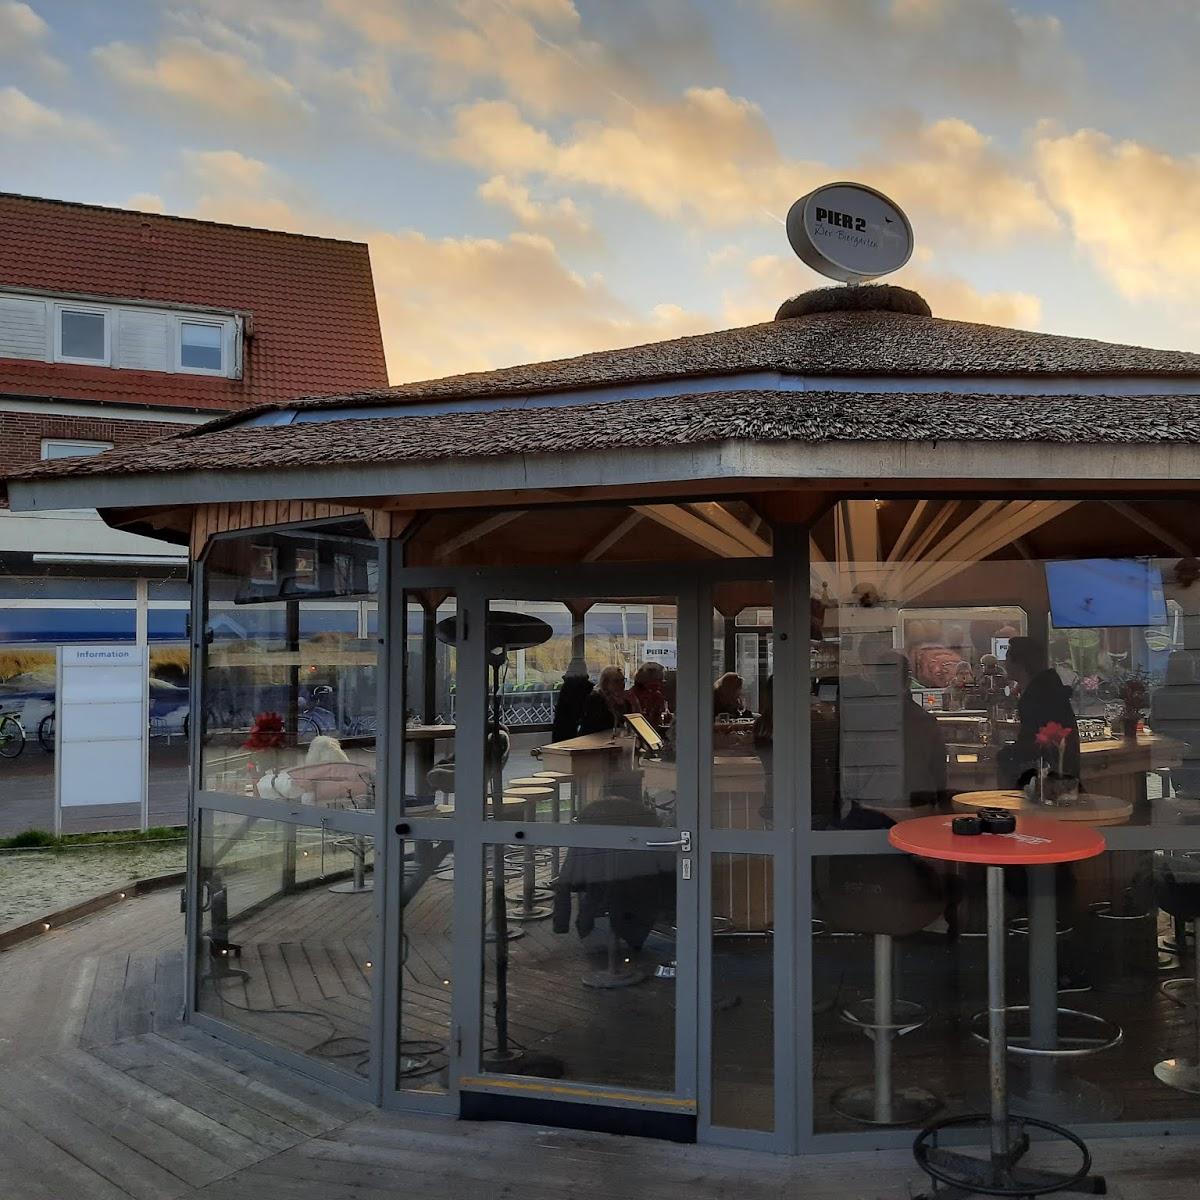 Restaurant "Pier 2" in Langeoog